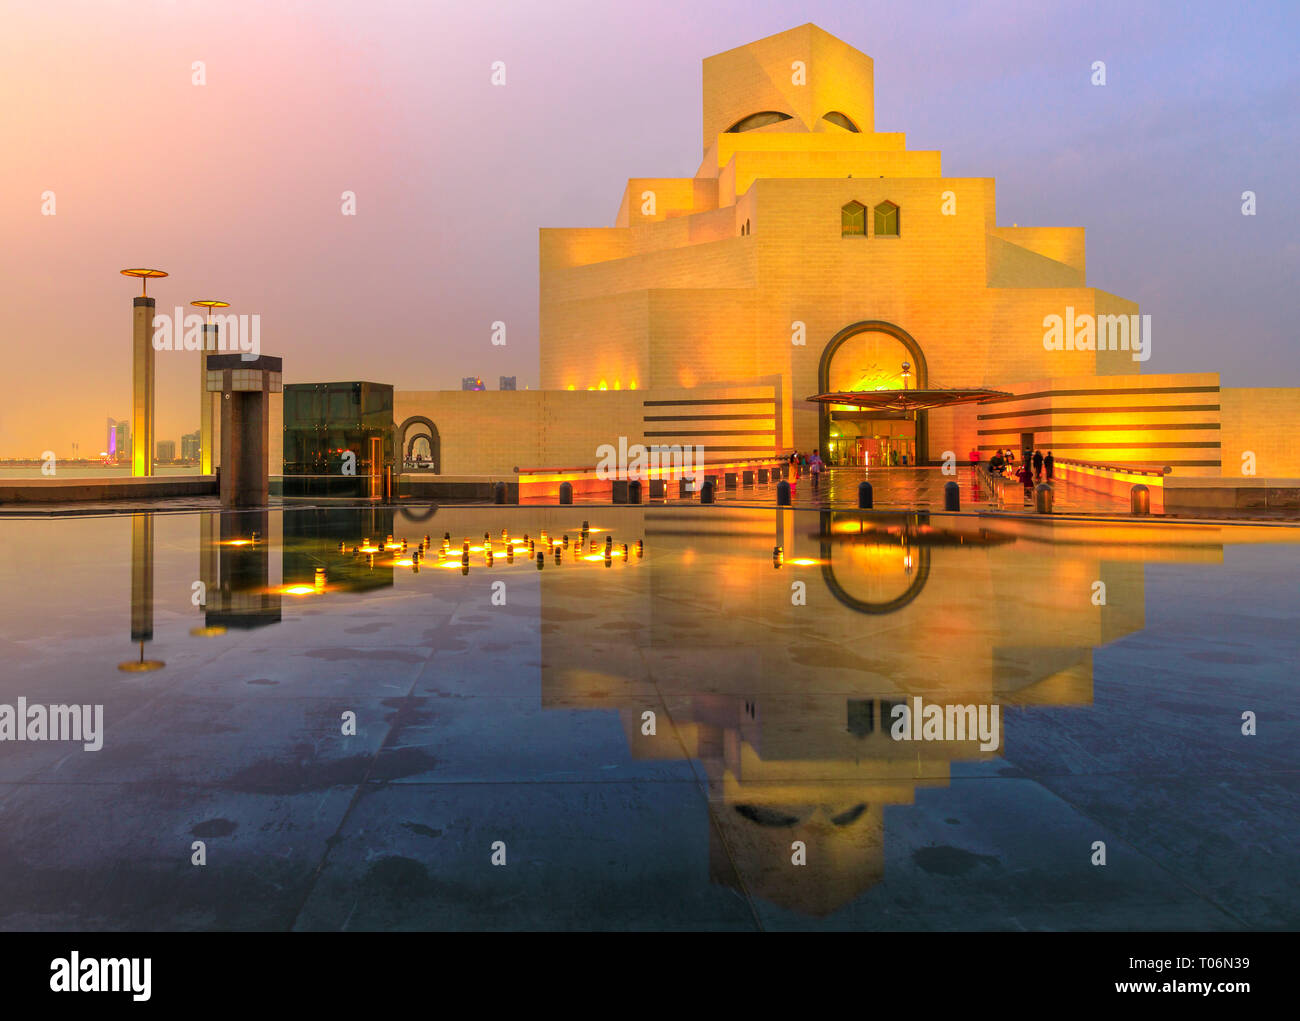 Doha, Qatar - Febrero 16, 2019: el Museo de Arte Islámico, atracción turística popular, a lo largo de la Corniche reflexionando sobre una fuente de agua en el cielo crepuscular Foto de stock